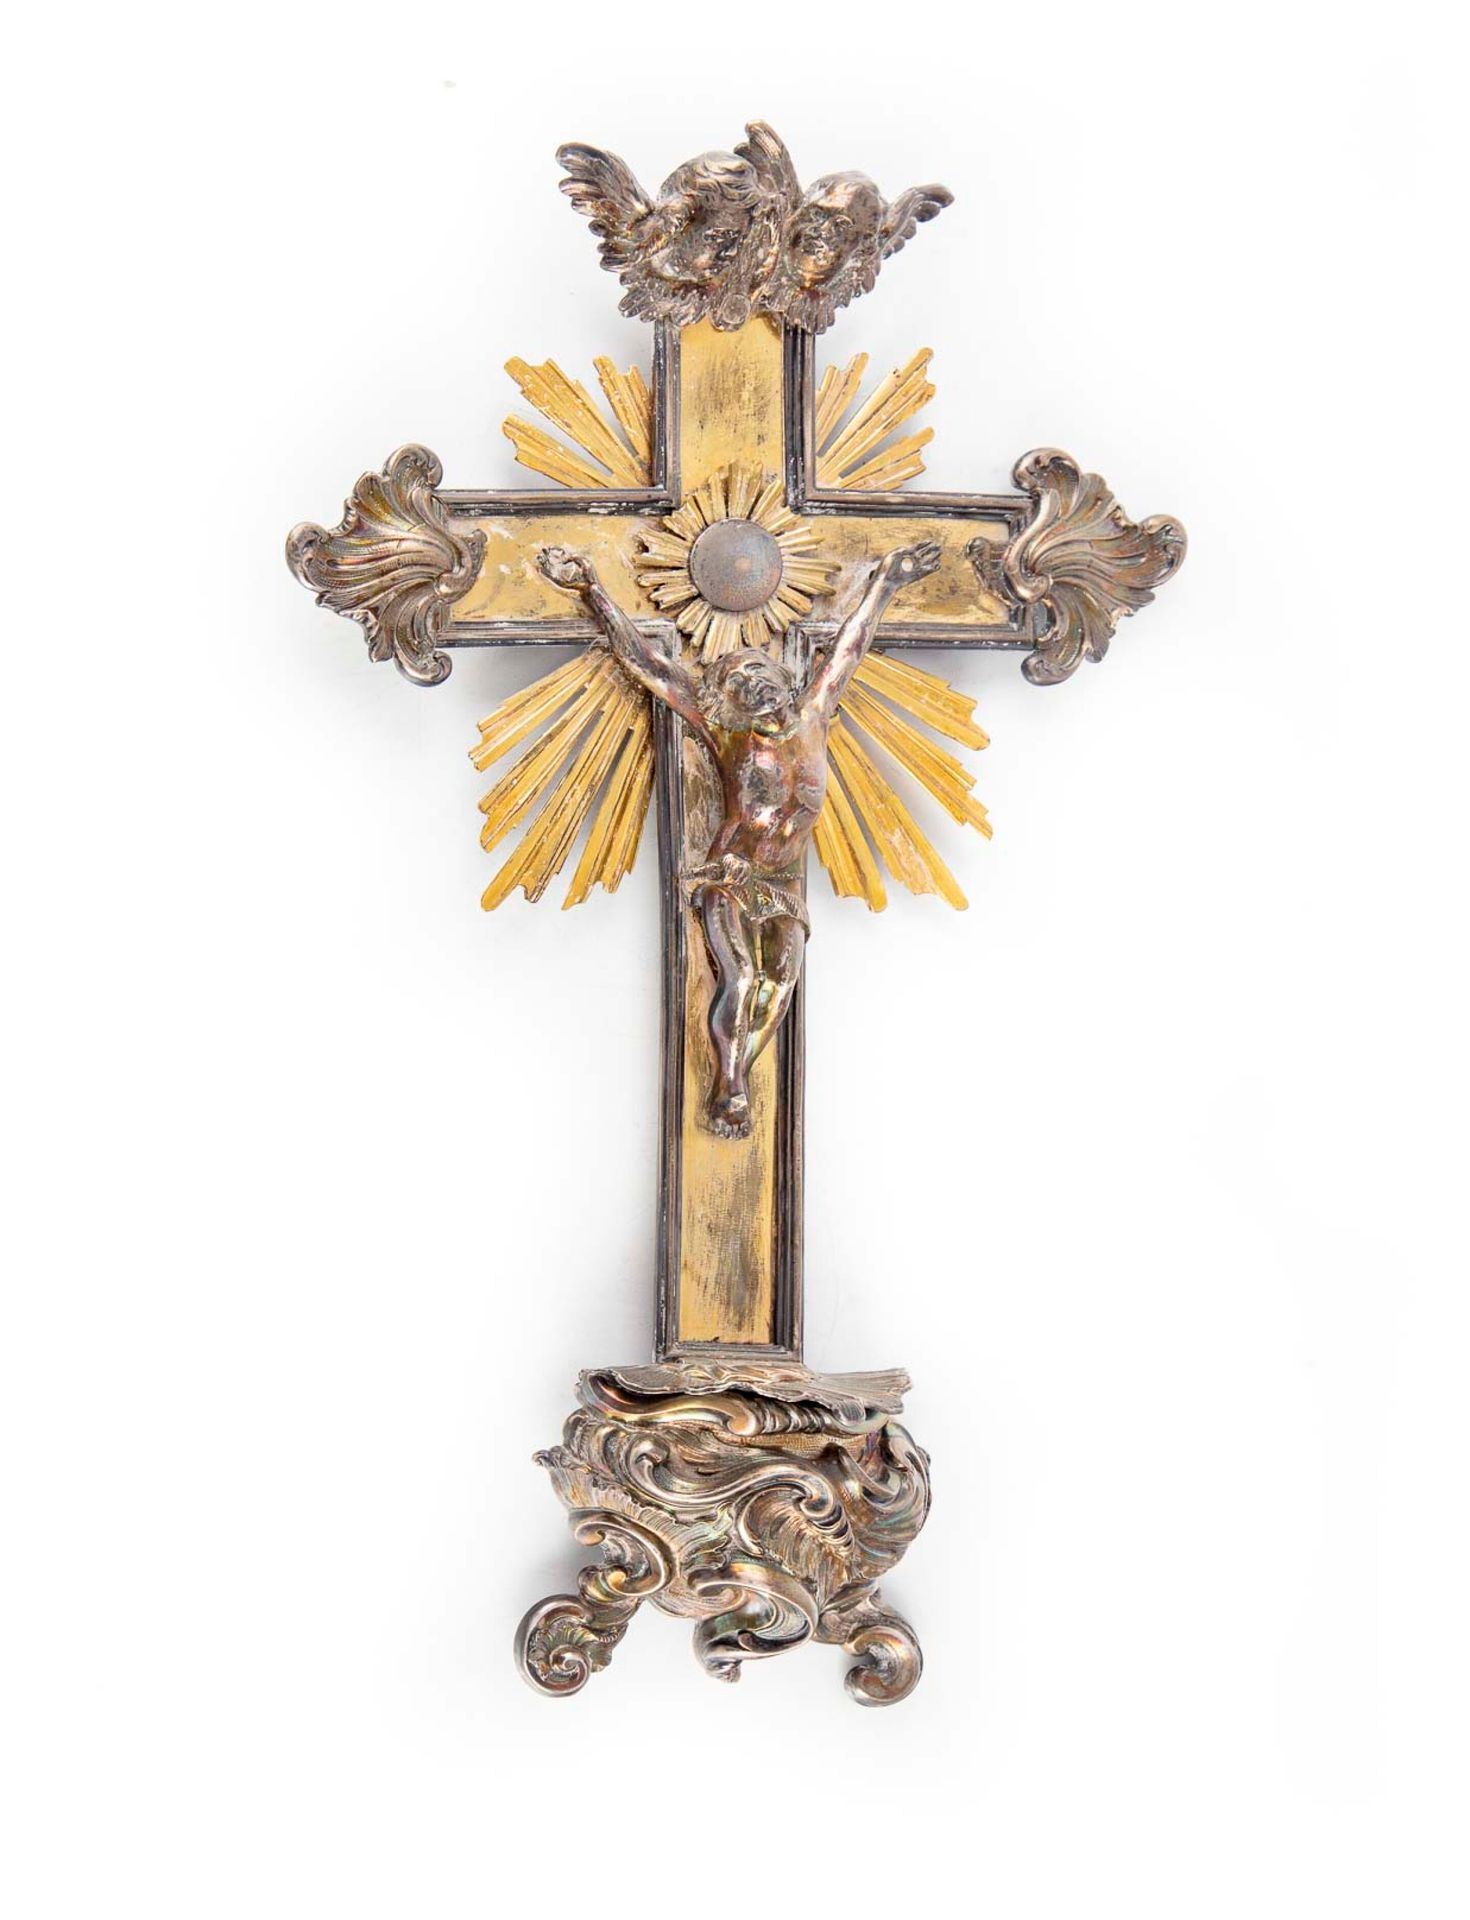 Null Crucifix formant bénitier en argent et laiton

Epoque XIXe

H. : 37 cm